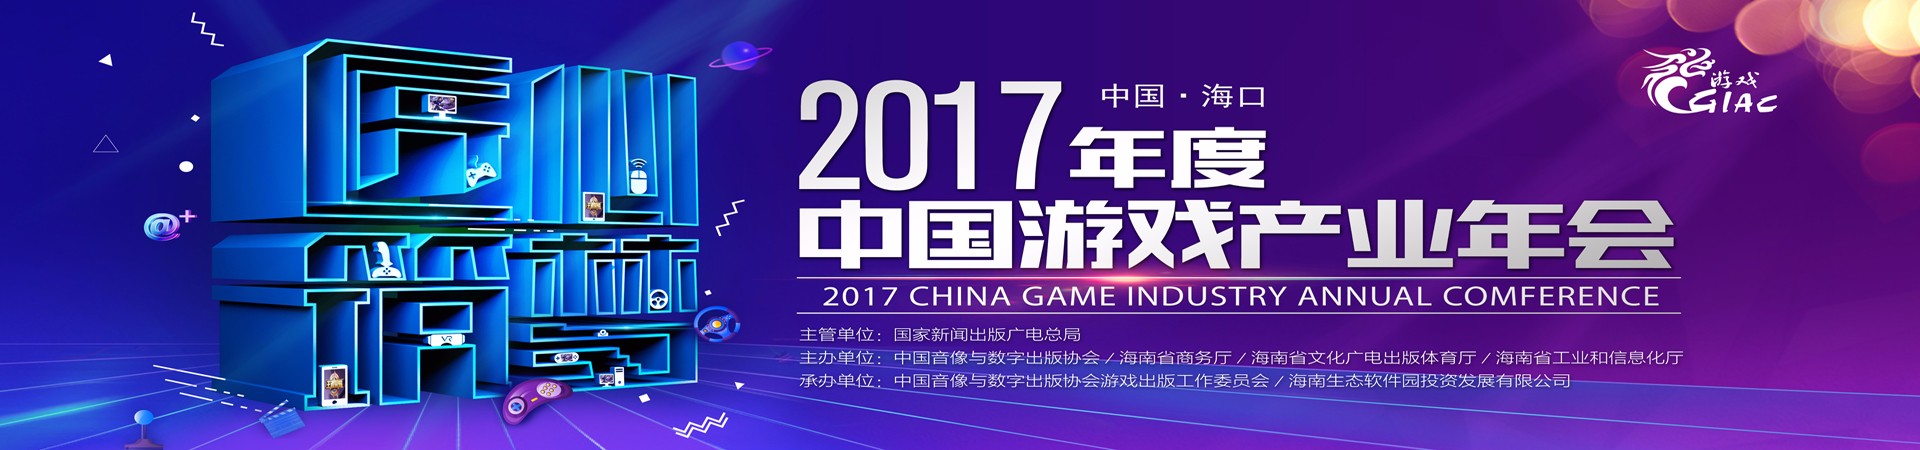 匠心筑梦 再聚海南 2017年度中国游戏产业年会开启报名